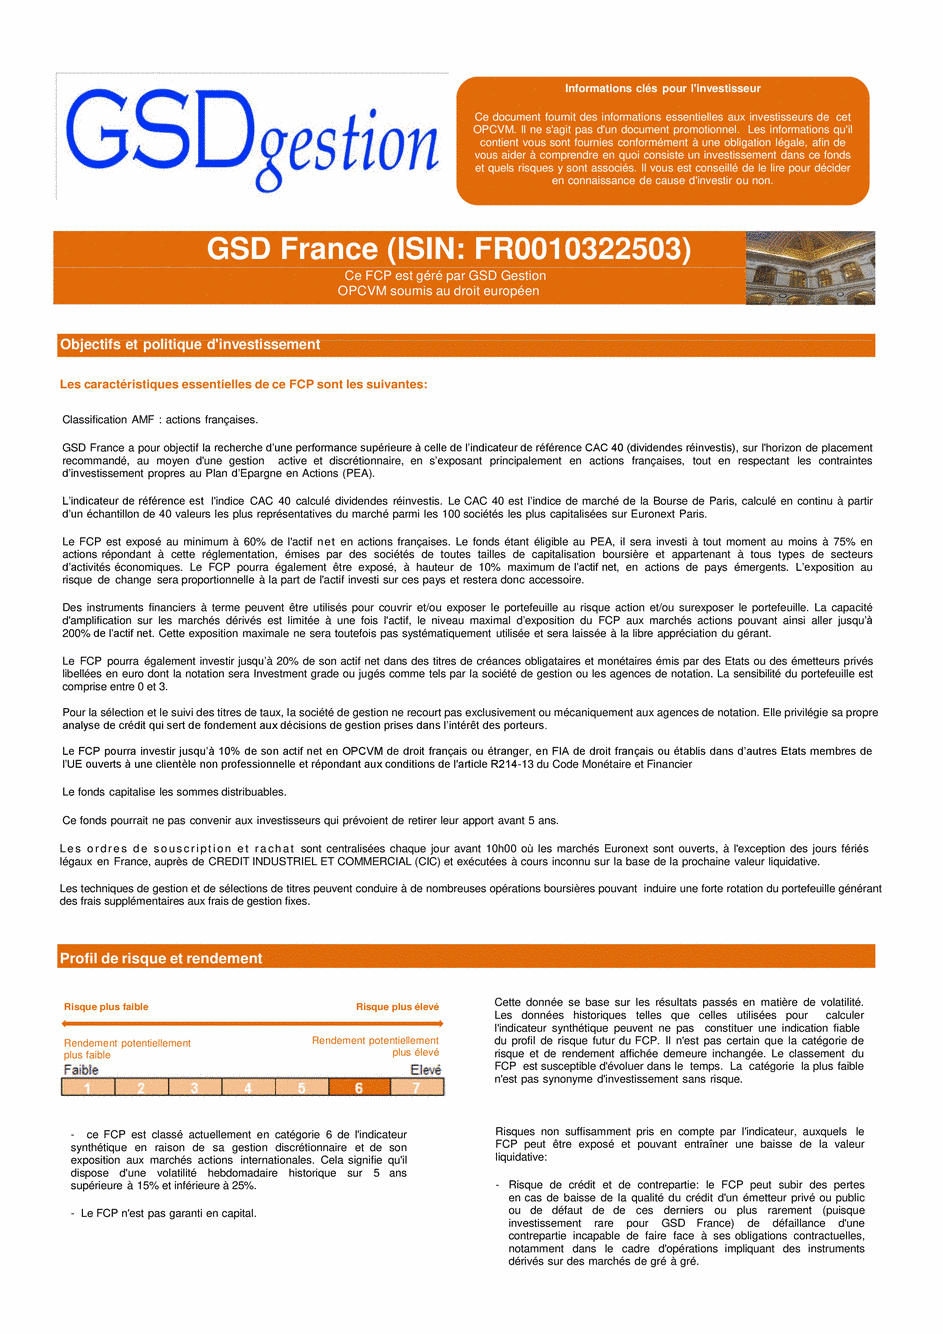 DICI-Prospectus Complet GSD France - 20/02/2019 - Français